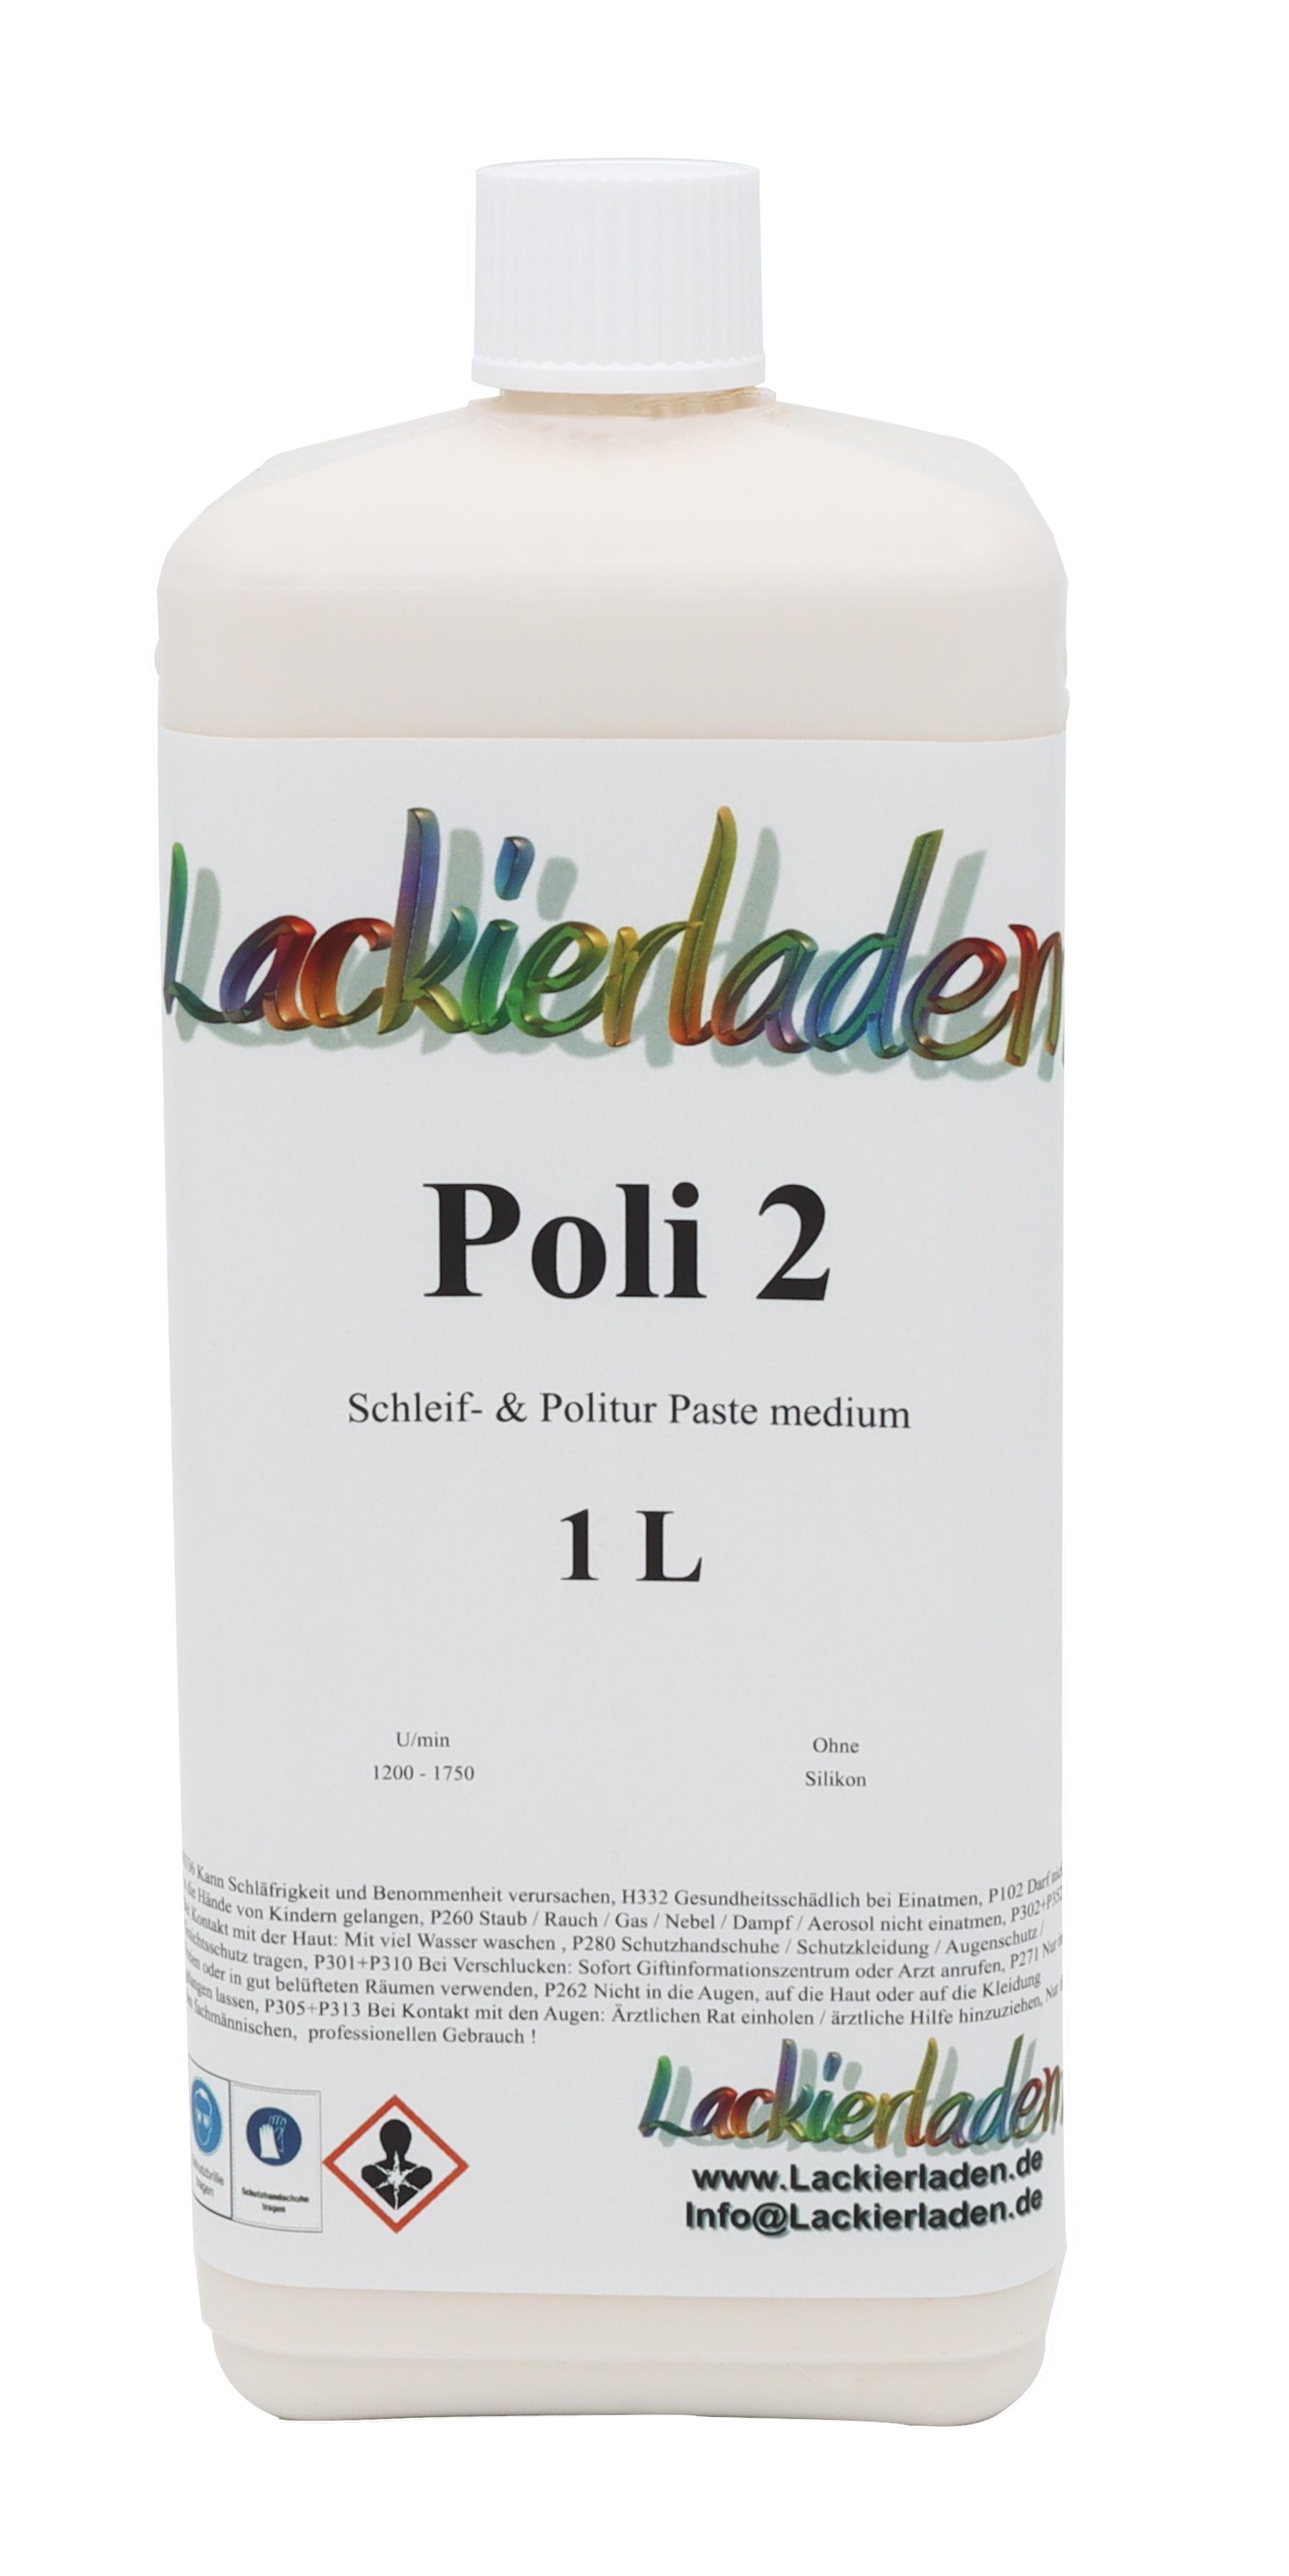 Poli 2 Schleif- & Politur Paste medium 1,0 L | Polierpaste Schleifpaste polieren 1L